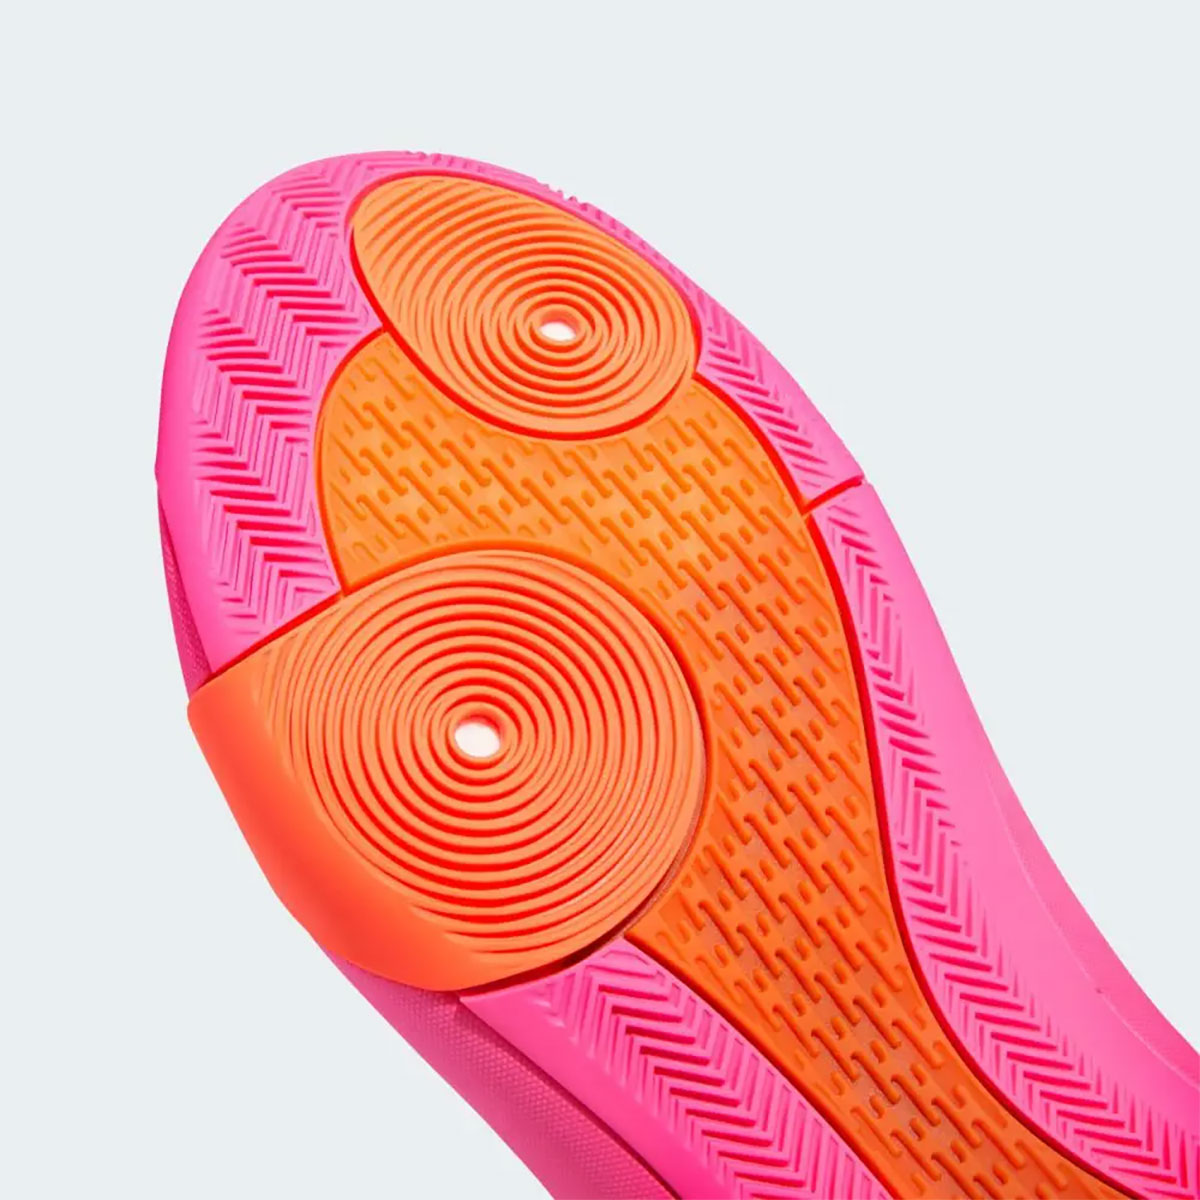 adidas walmart harden vol 8 flamingo pink ie2698 release date 8